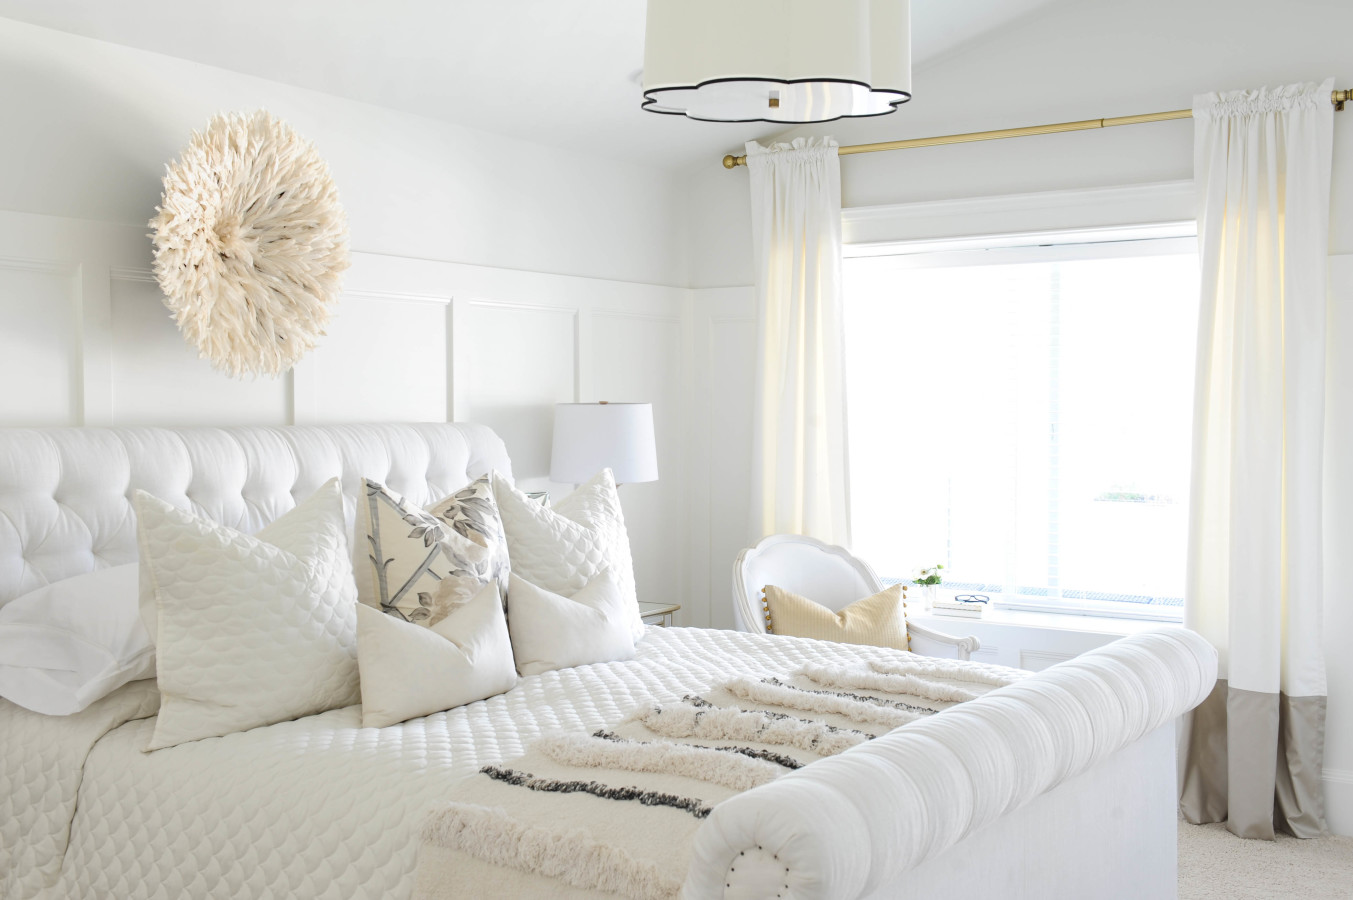 Dormitorio blanco en estilo moderno (35 fotos): diseño de interiores